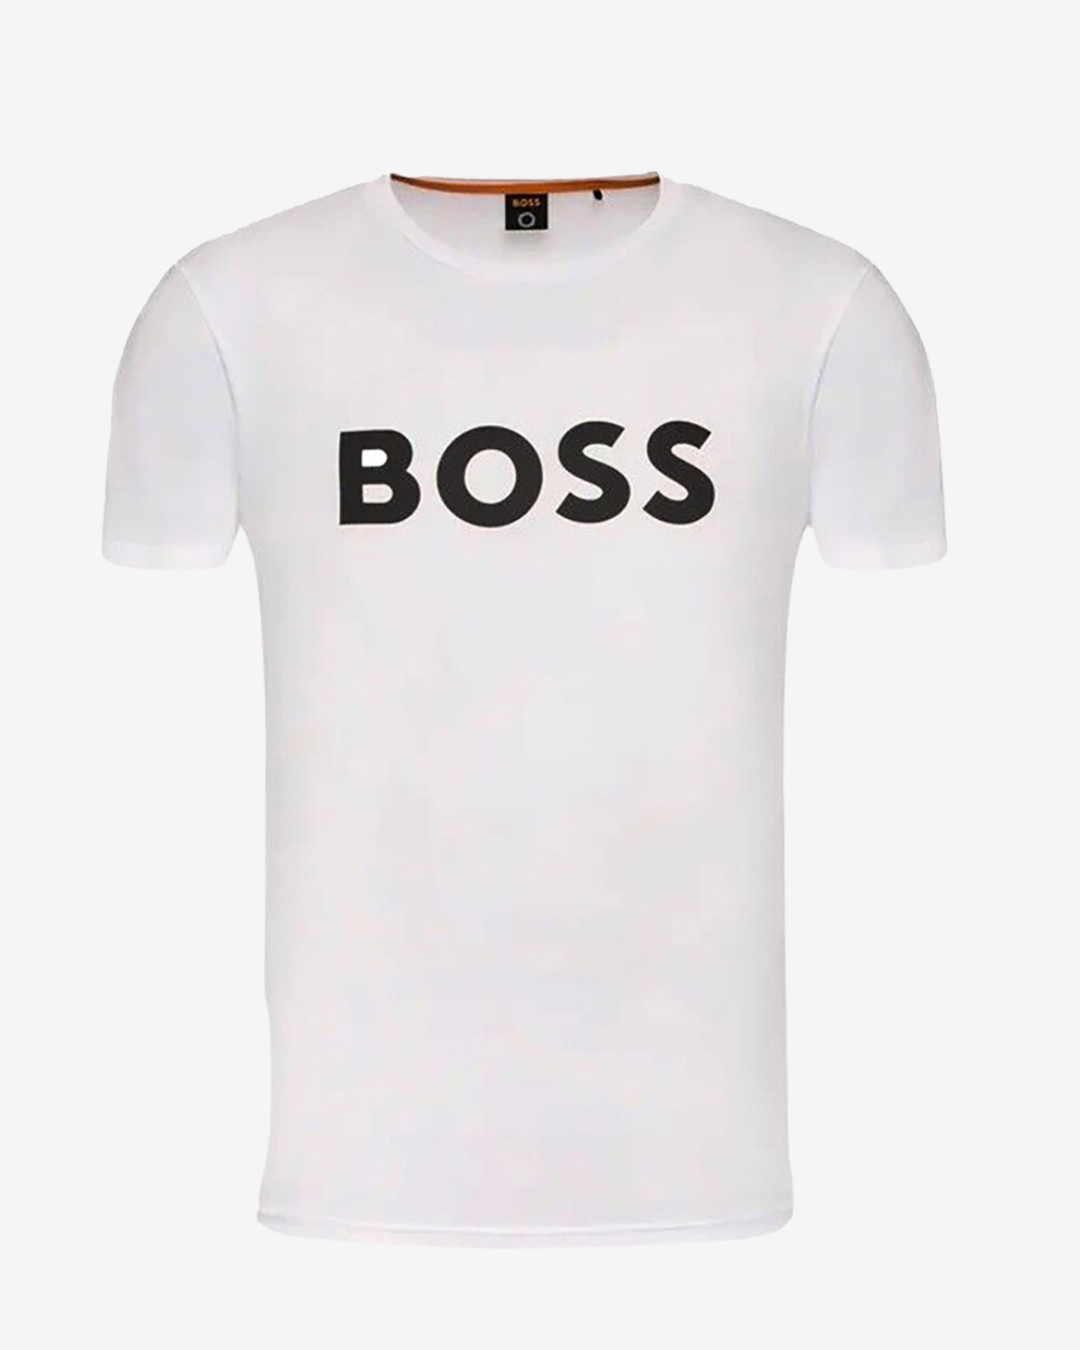 Billede af Hugo Boss Thinking logo t-shirt - Hvid - Str. XXL - Modish.dk